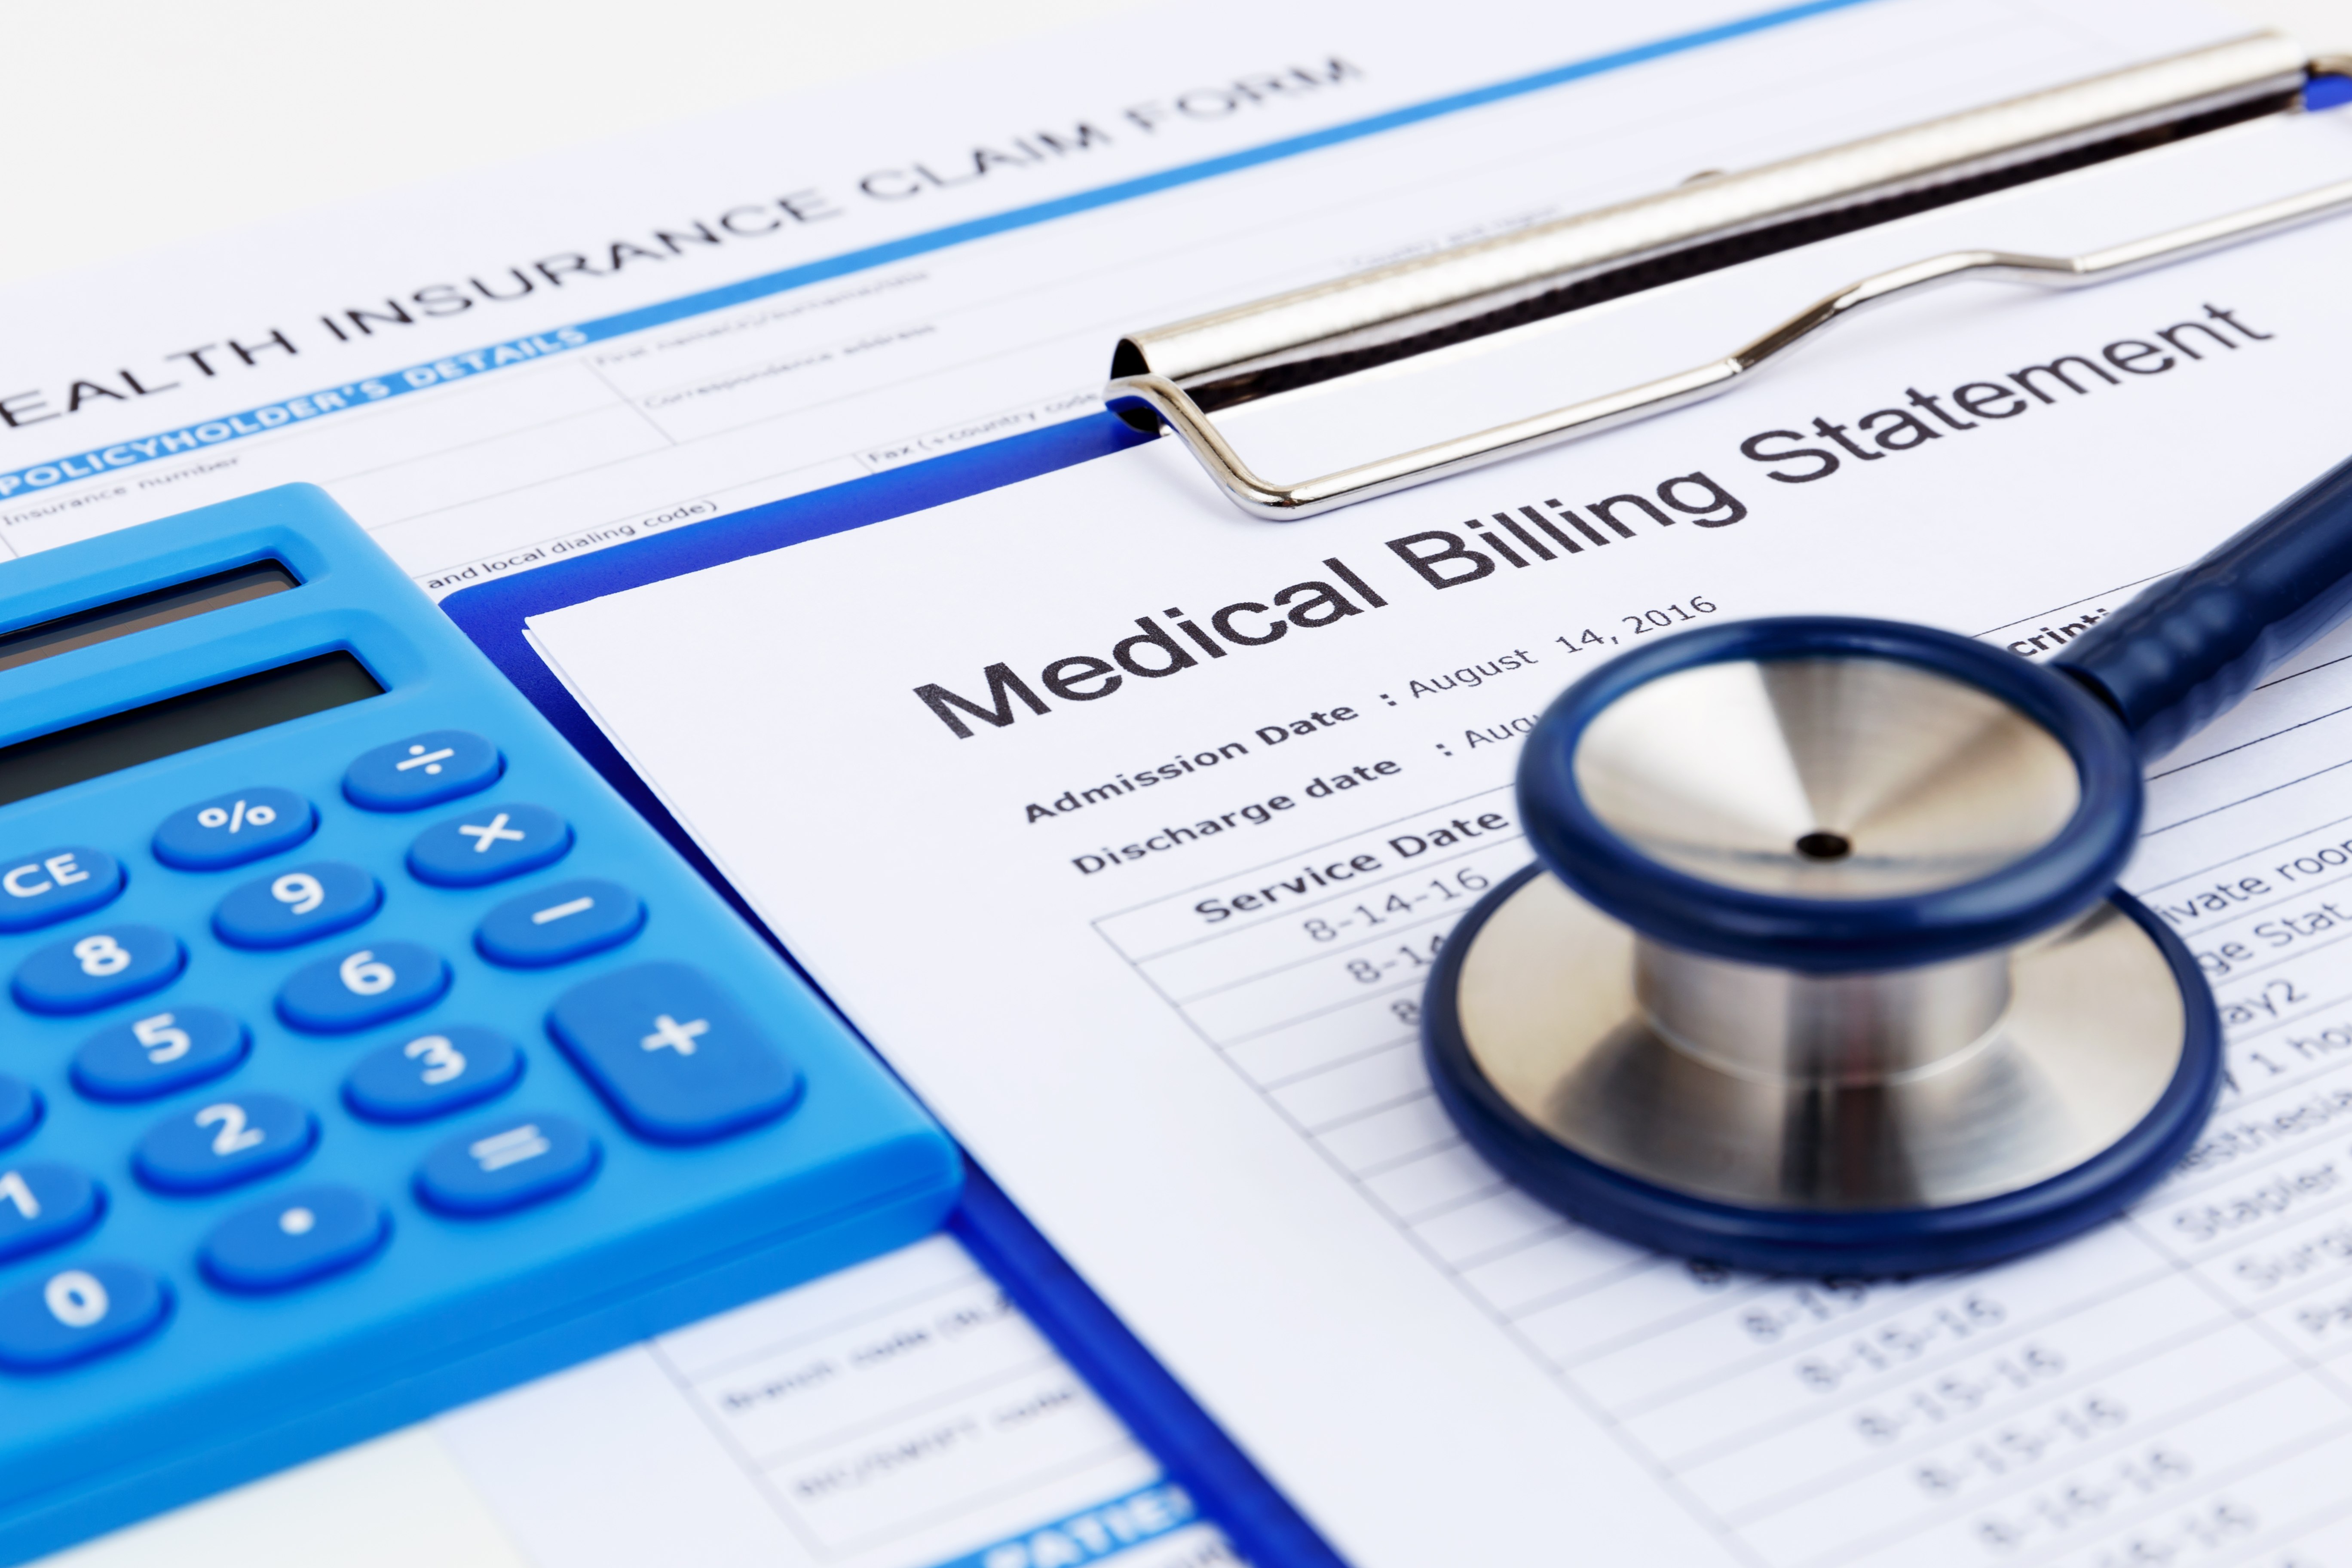 A medical bill statement | Source: Shutterstock